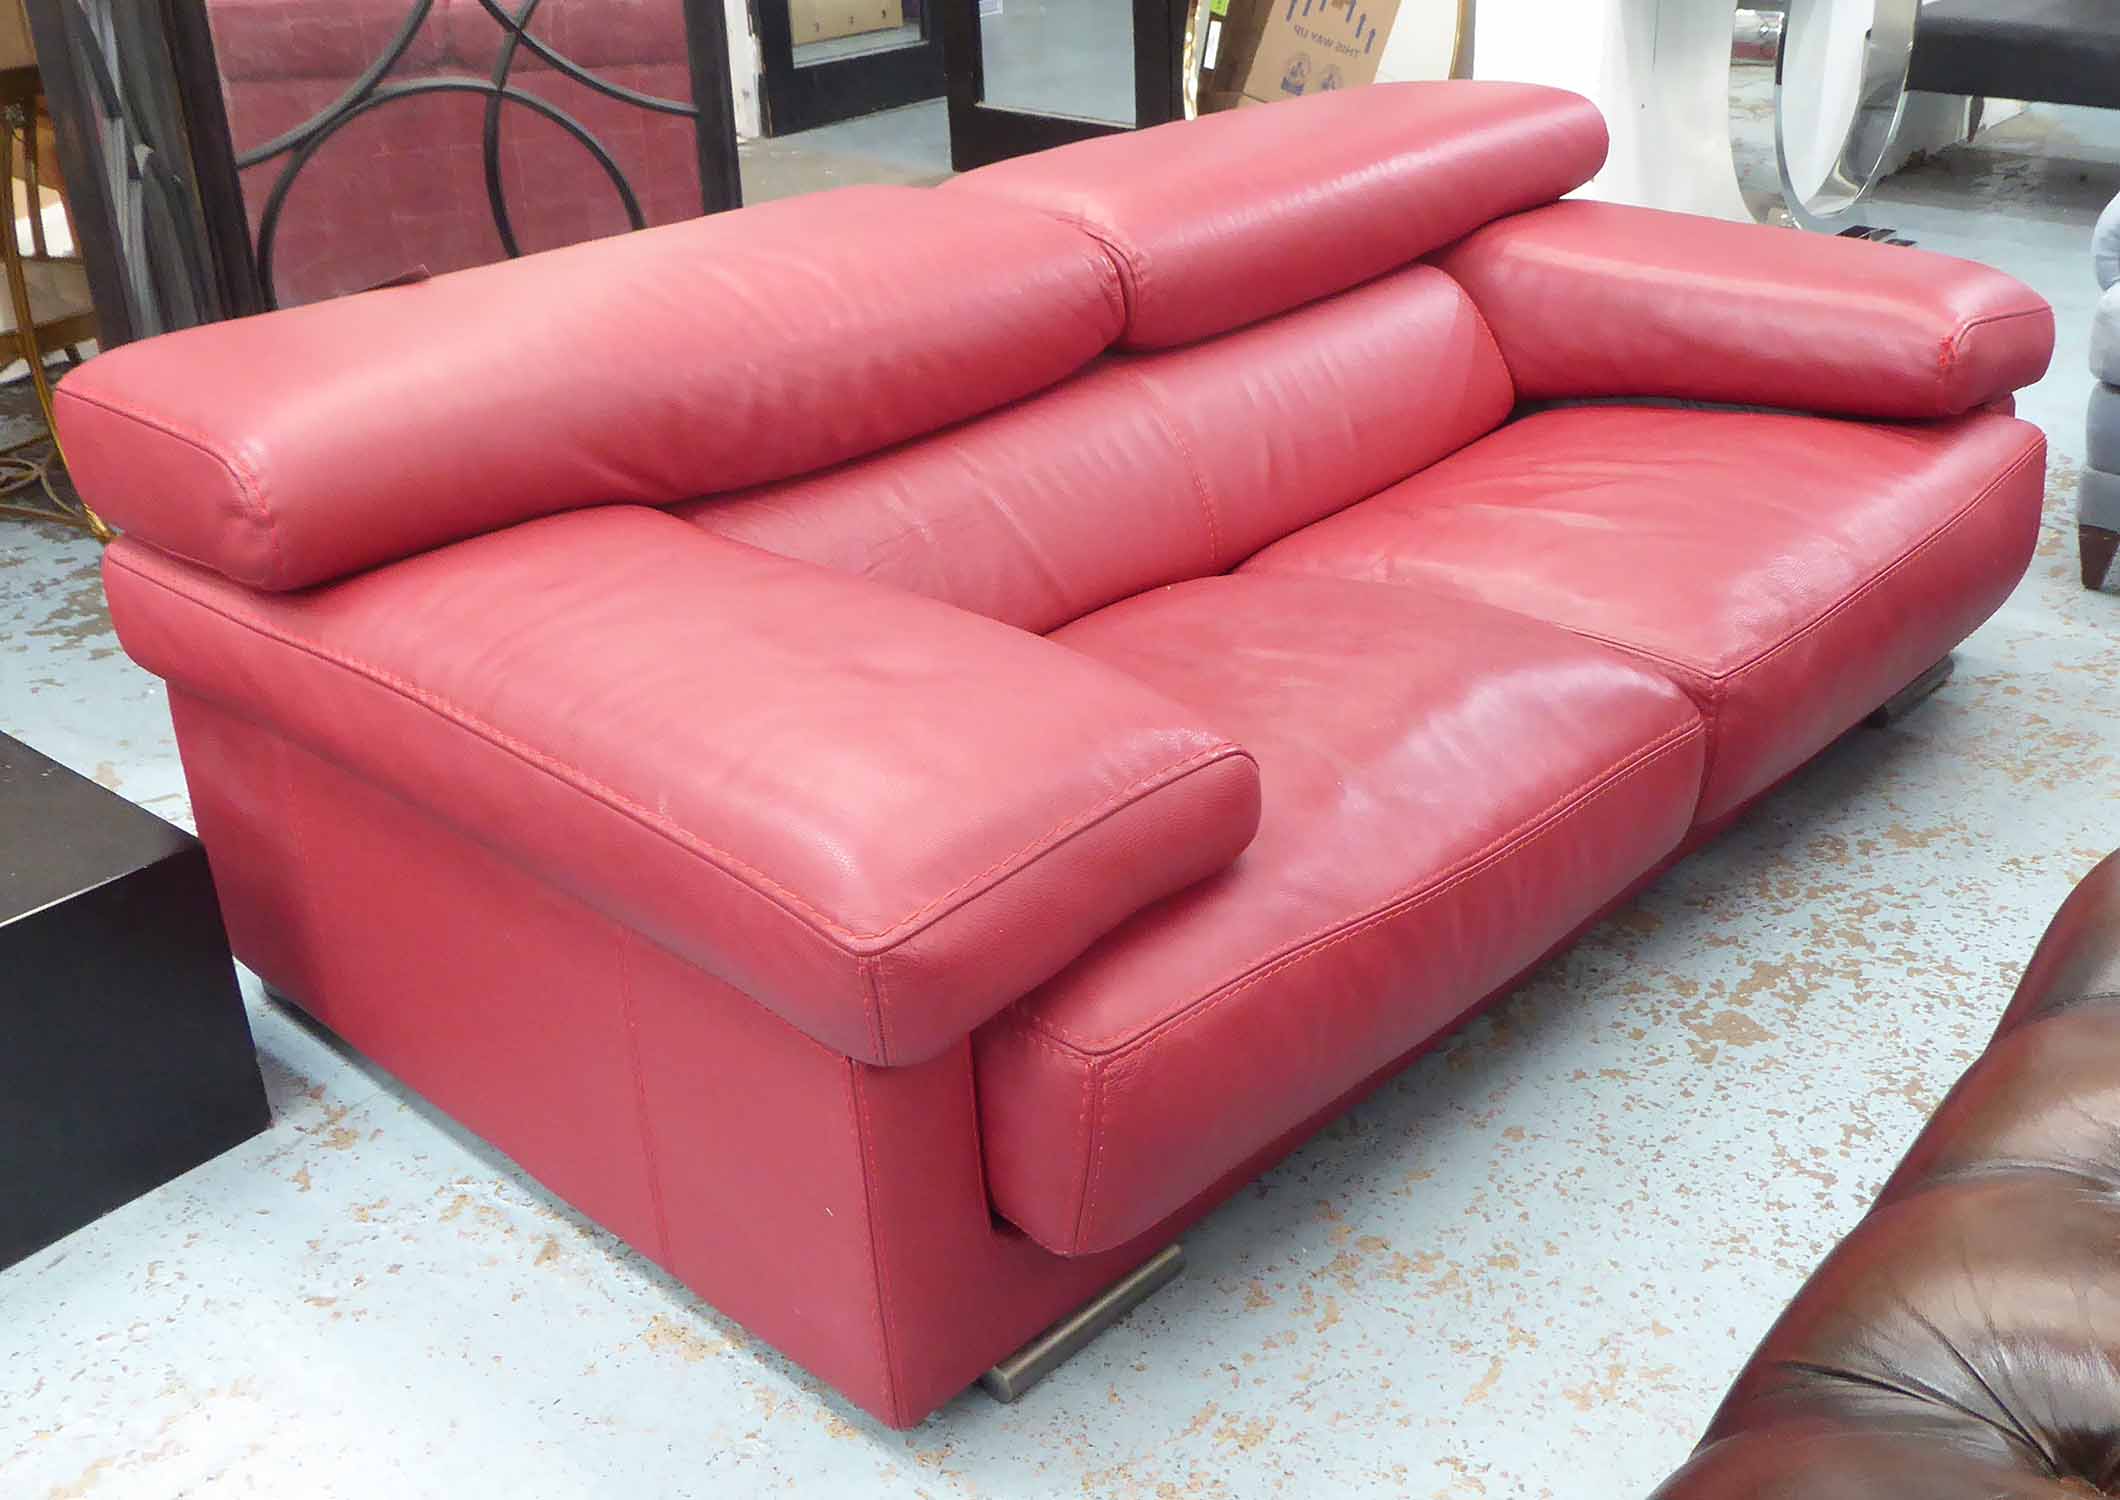 roche bobois leather sofa prices